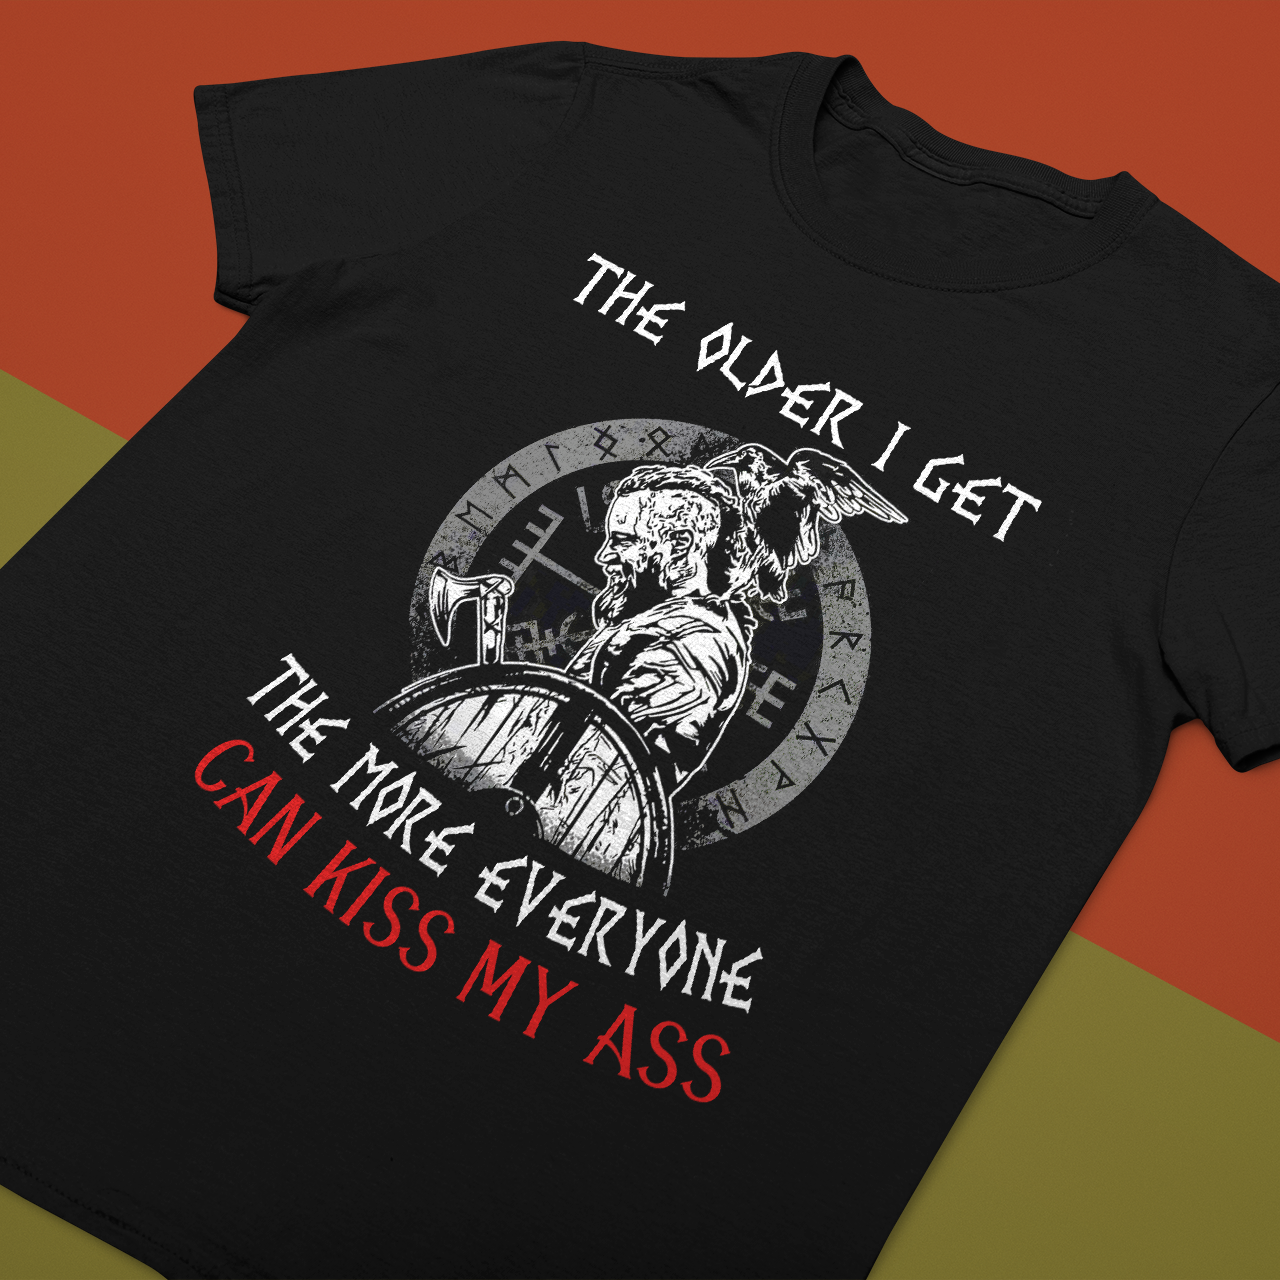 Kiss My Ass Viking T Shirt